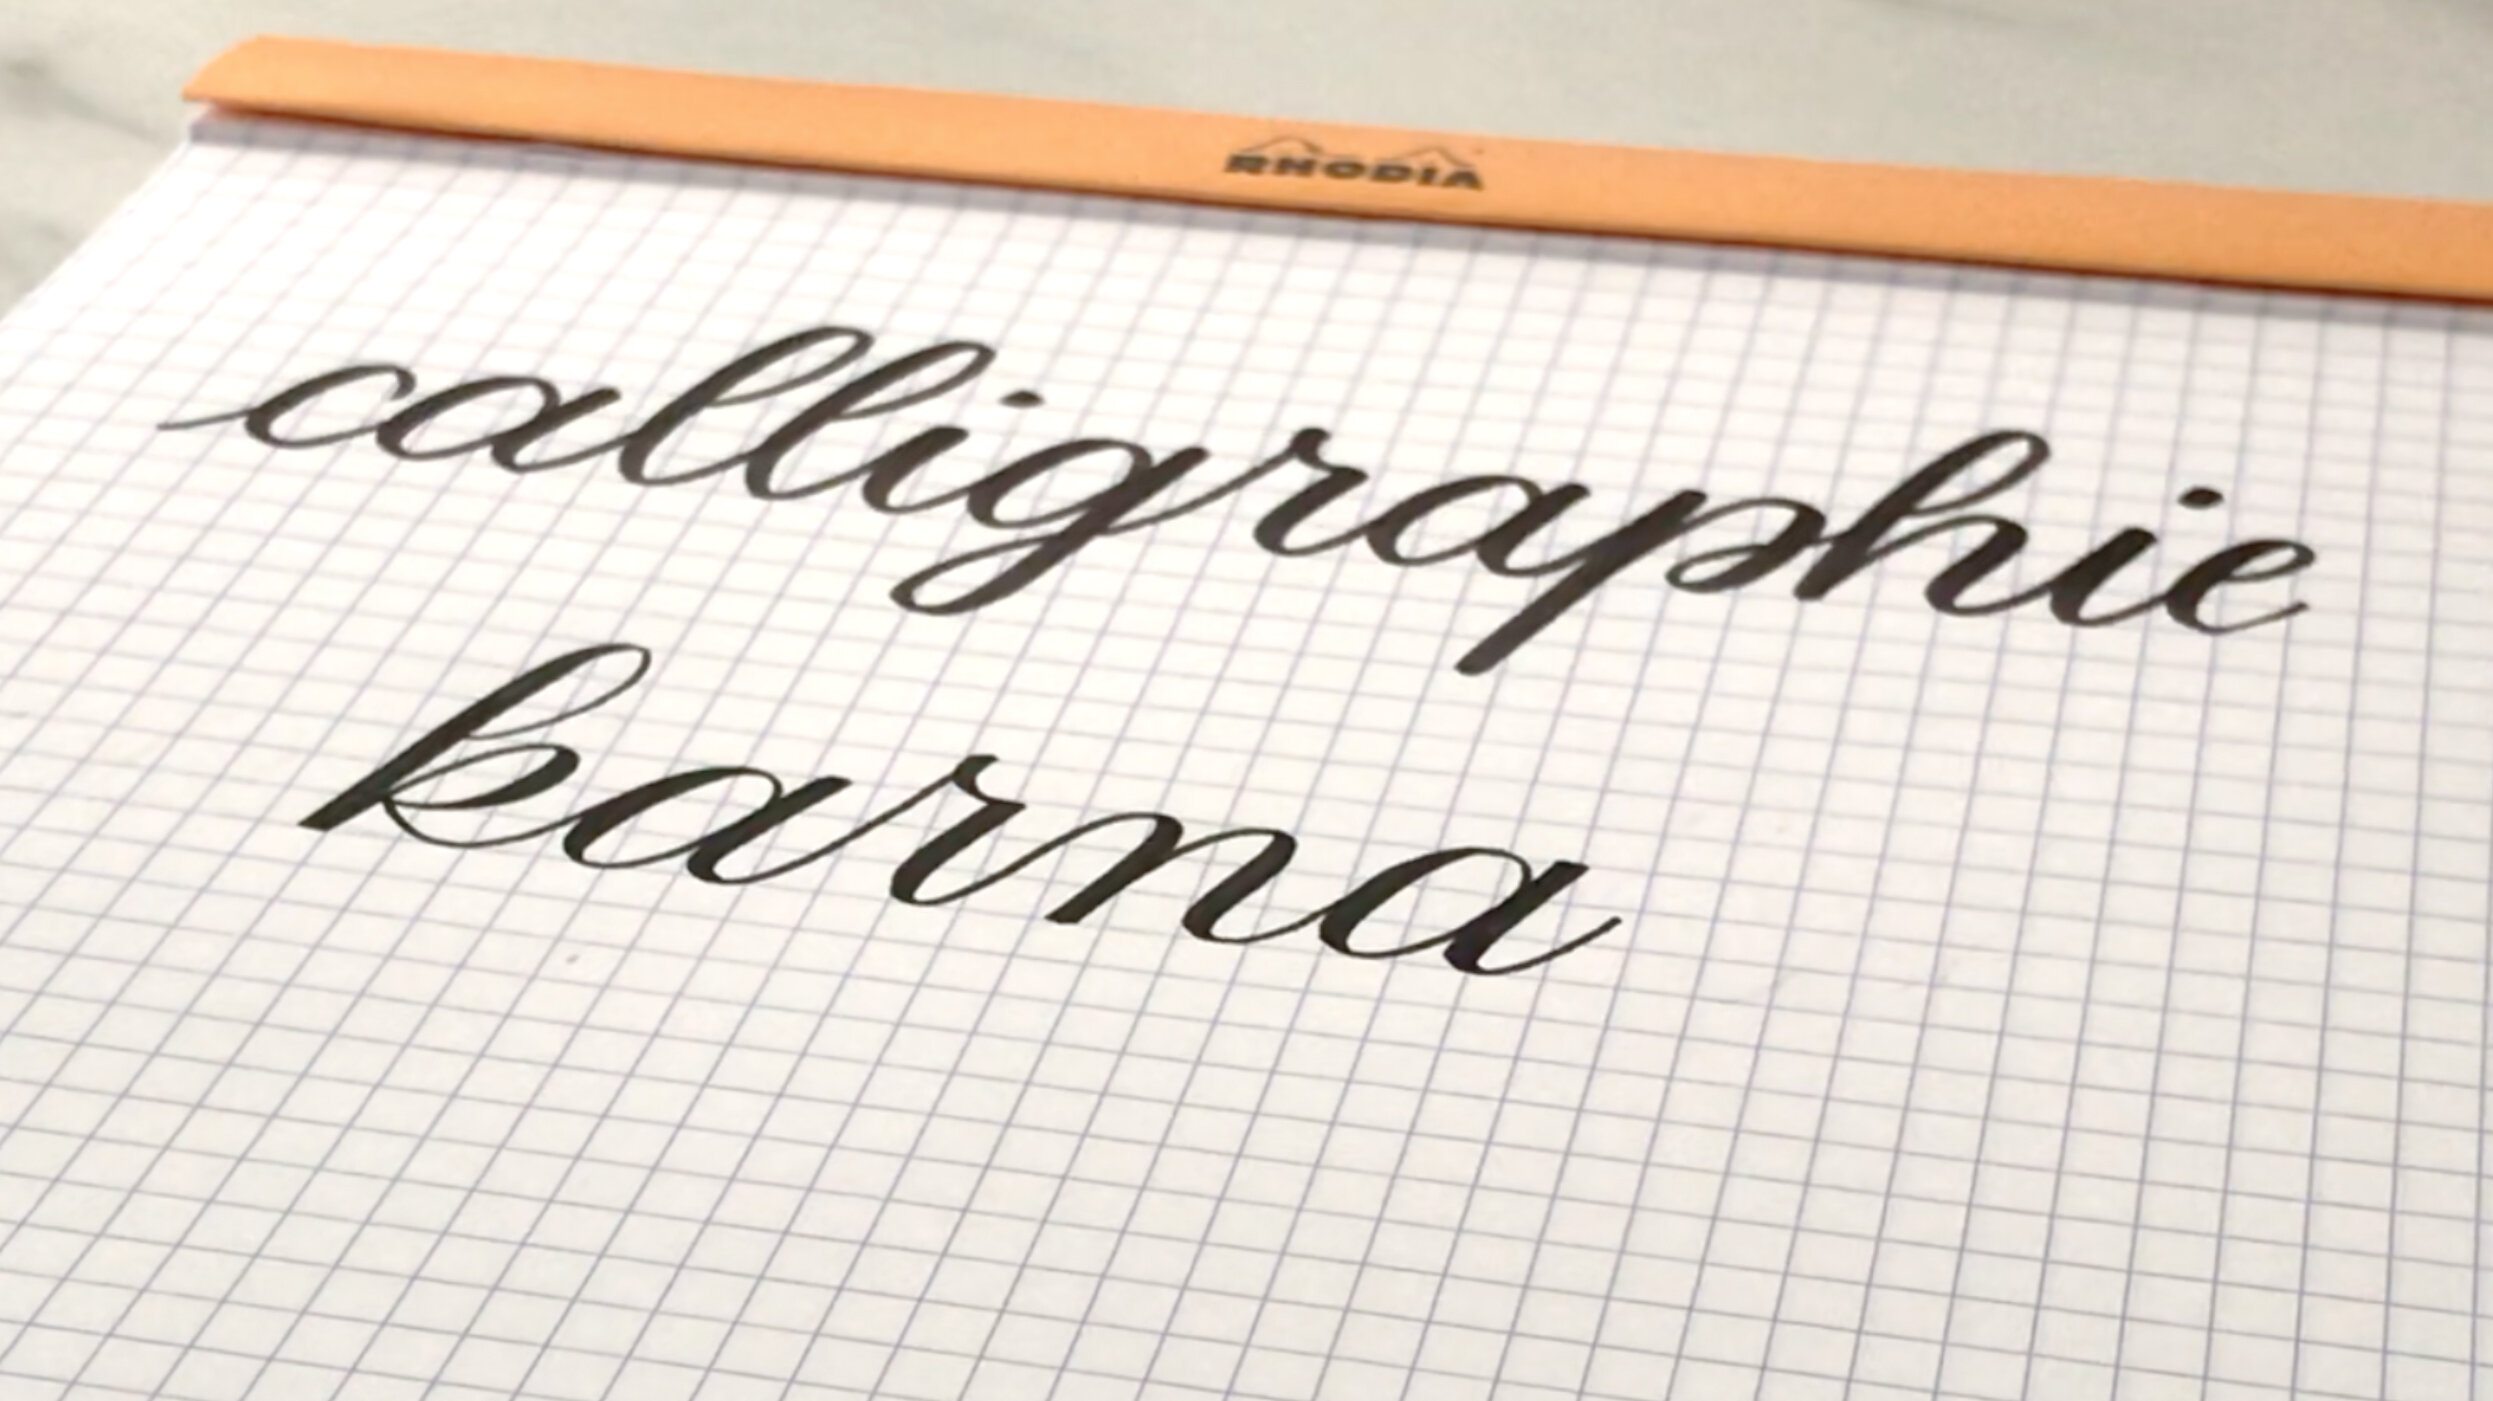 Faux calligraphie : Calligraphier sans matériel (+ fiche lettering